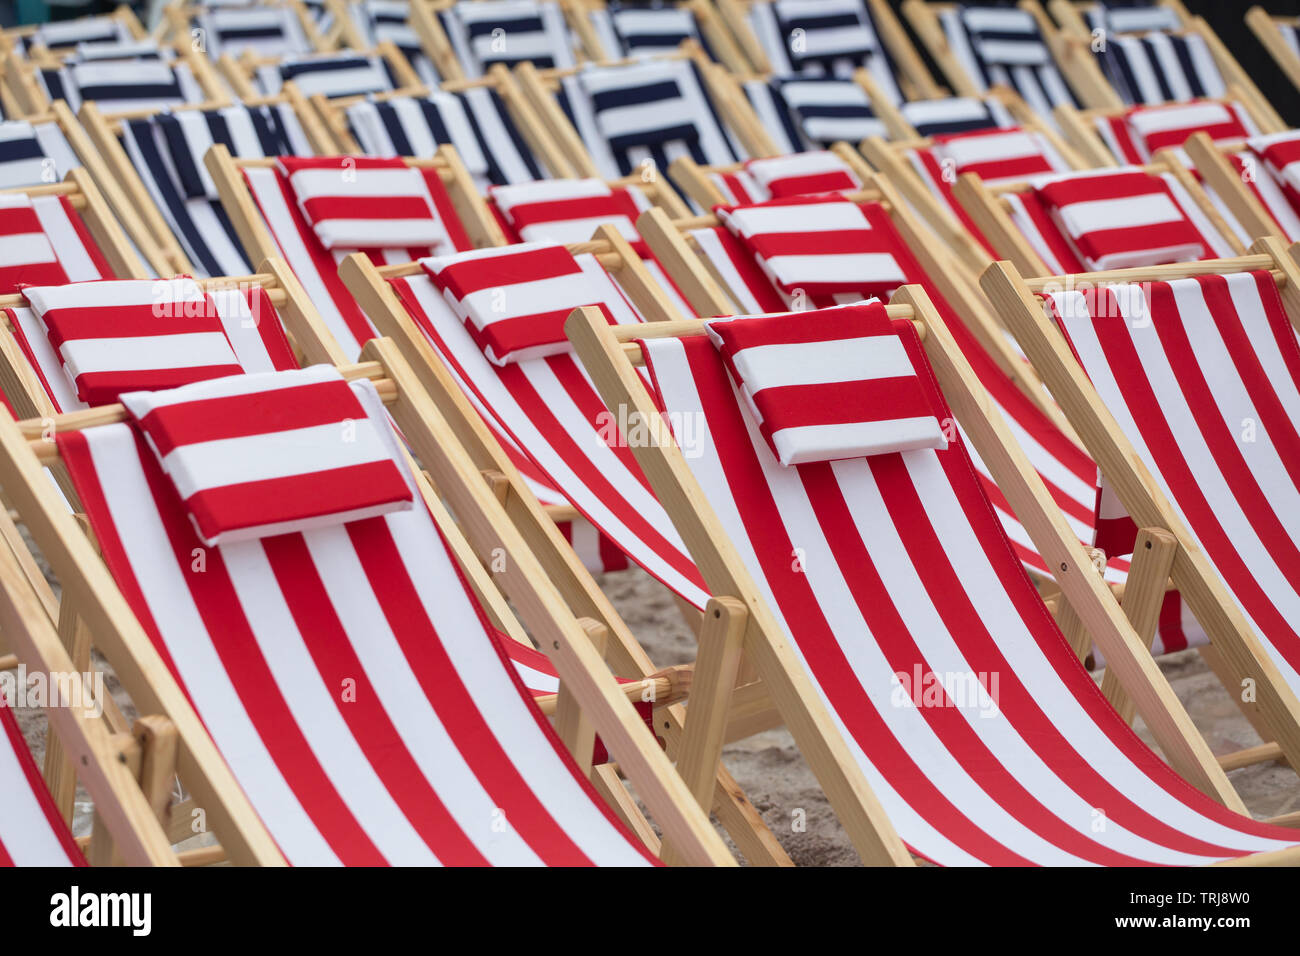 Vue rapprochée de plusieurs bande blanche rouge et bleu chaise de plage chaise de plage à rayures blanches outdoor Banque D'Images